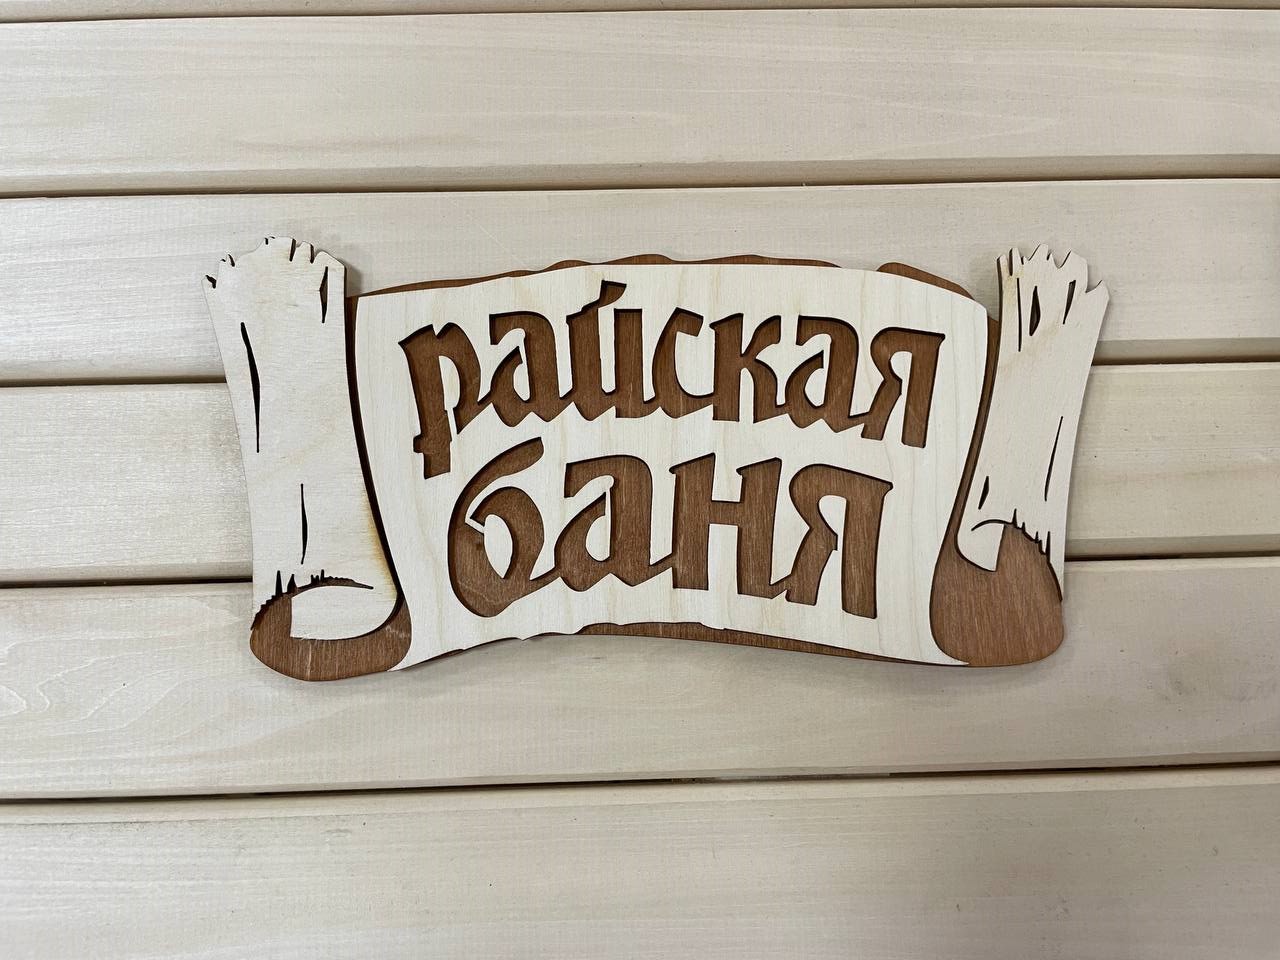 Табличка "Райская баня, береста"